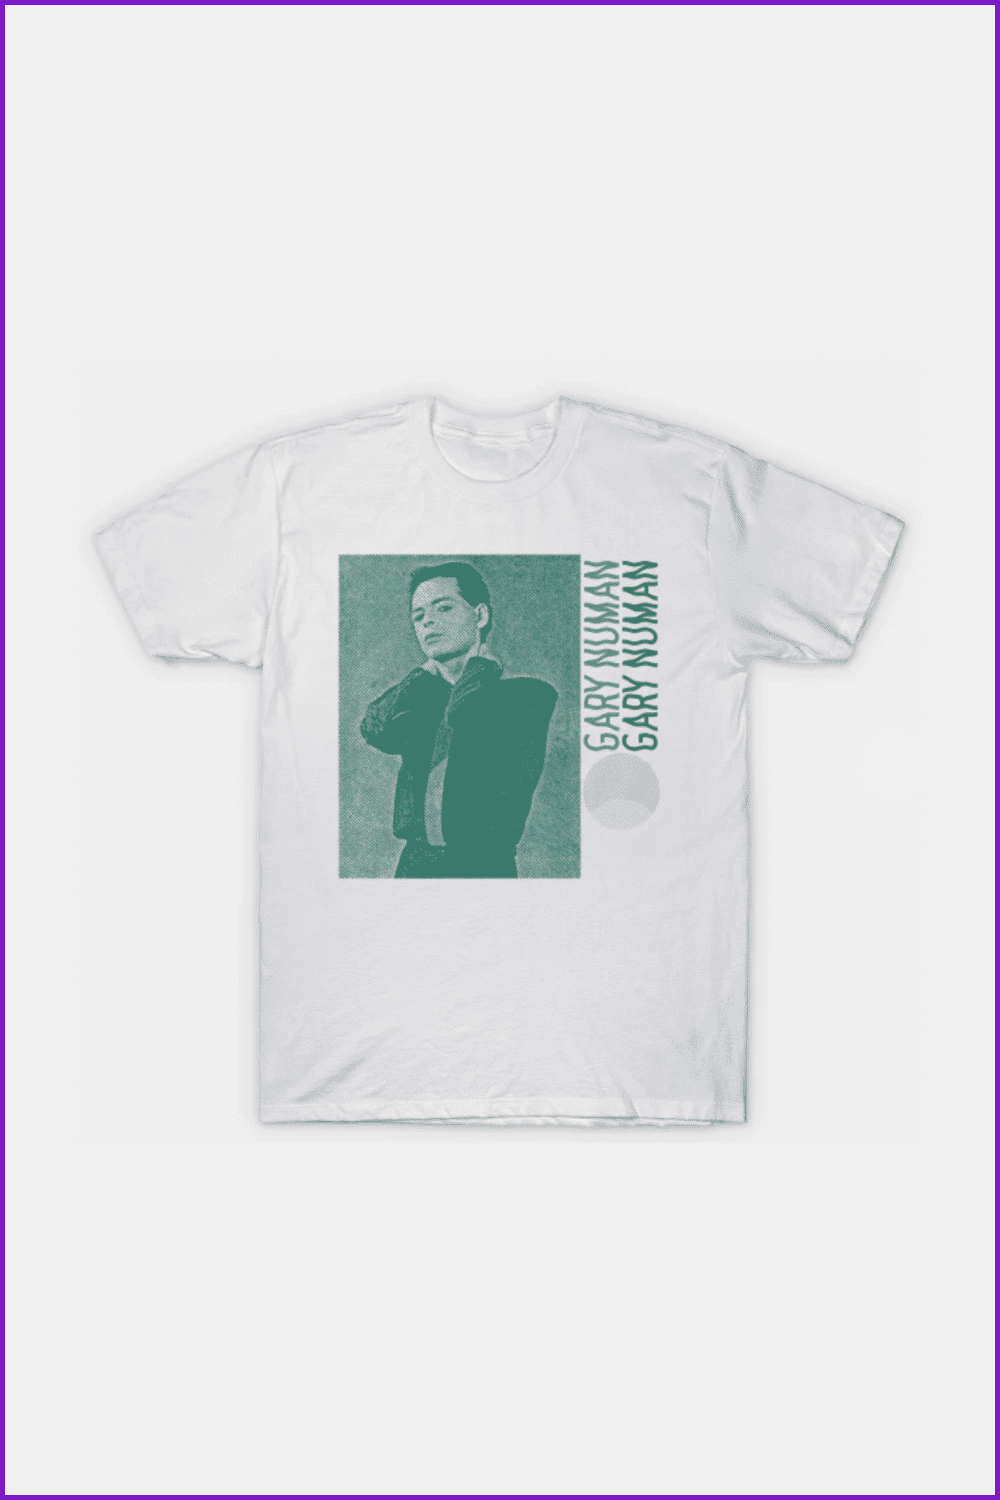 Gary Numan Retro 80s Fan Design T-Shirt.